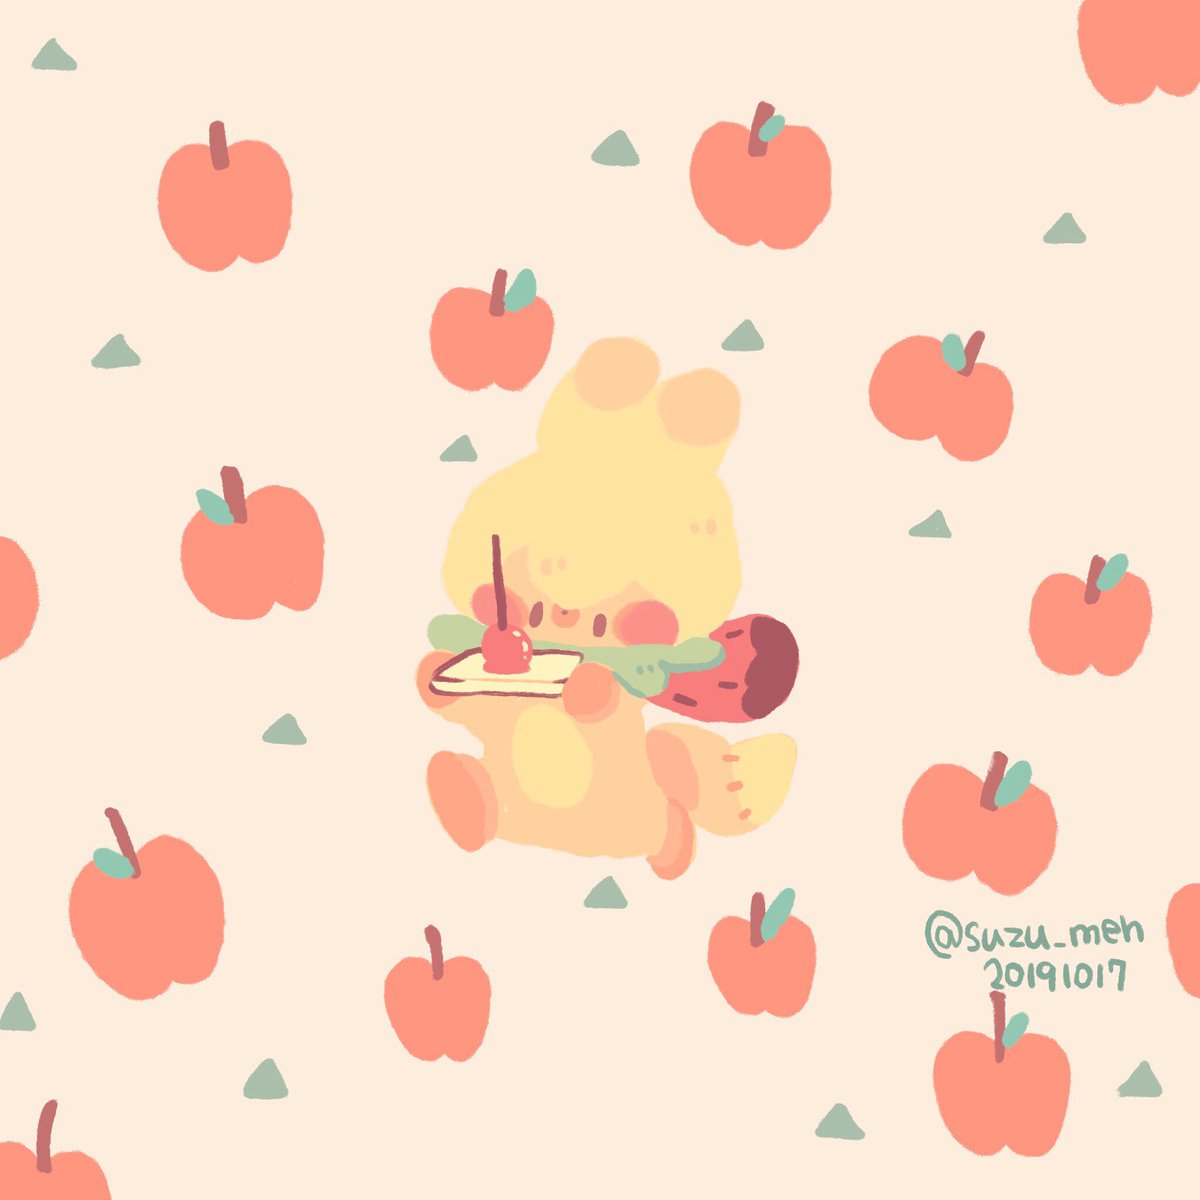 ササクラ على تويتر りんご飴 食べてみたいなぁ イラスト 絵 絵描き 癒し かわいい キツネ りんご飴 りんご いちご メーとスズメの友達